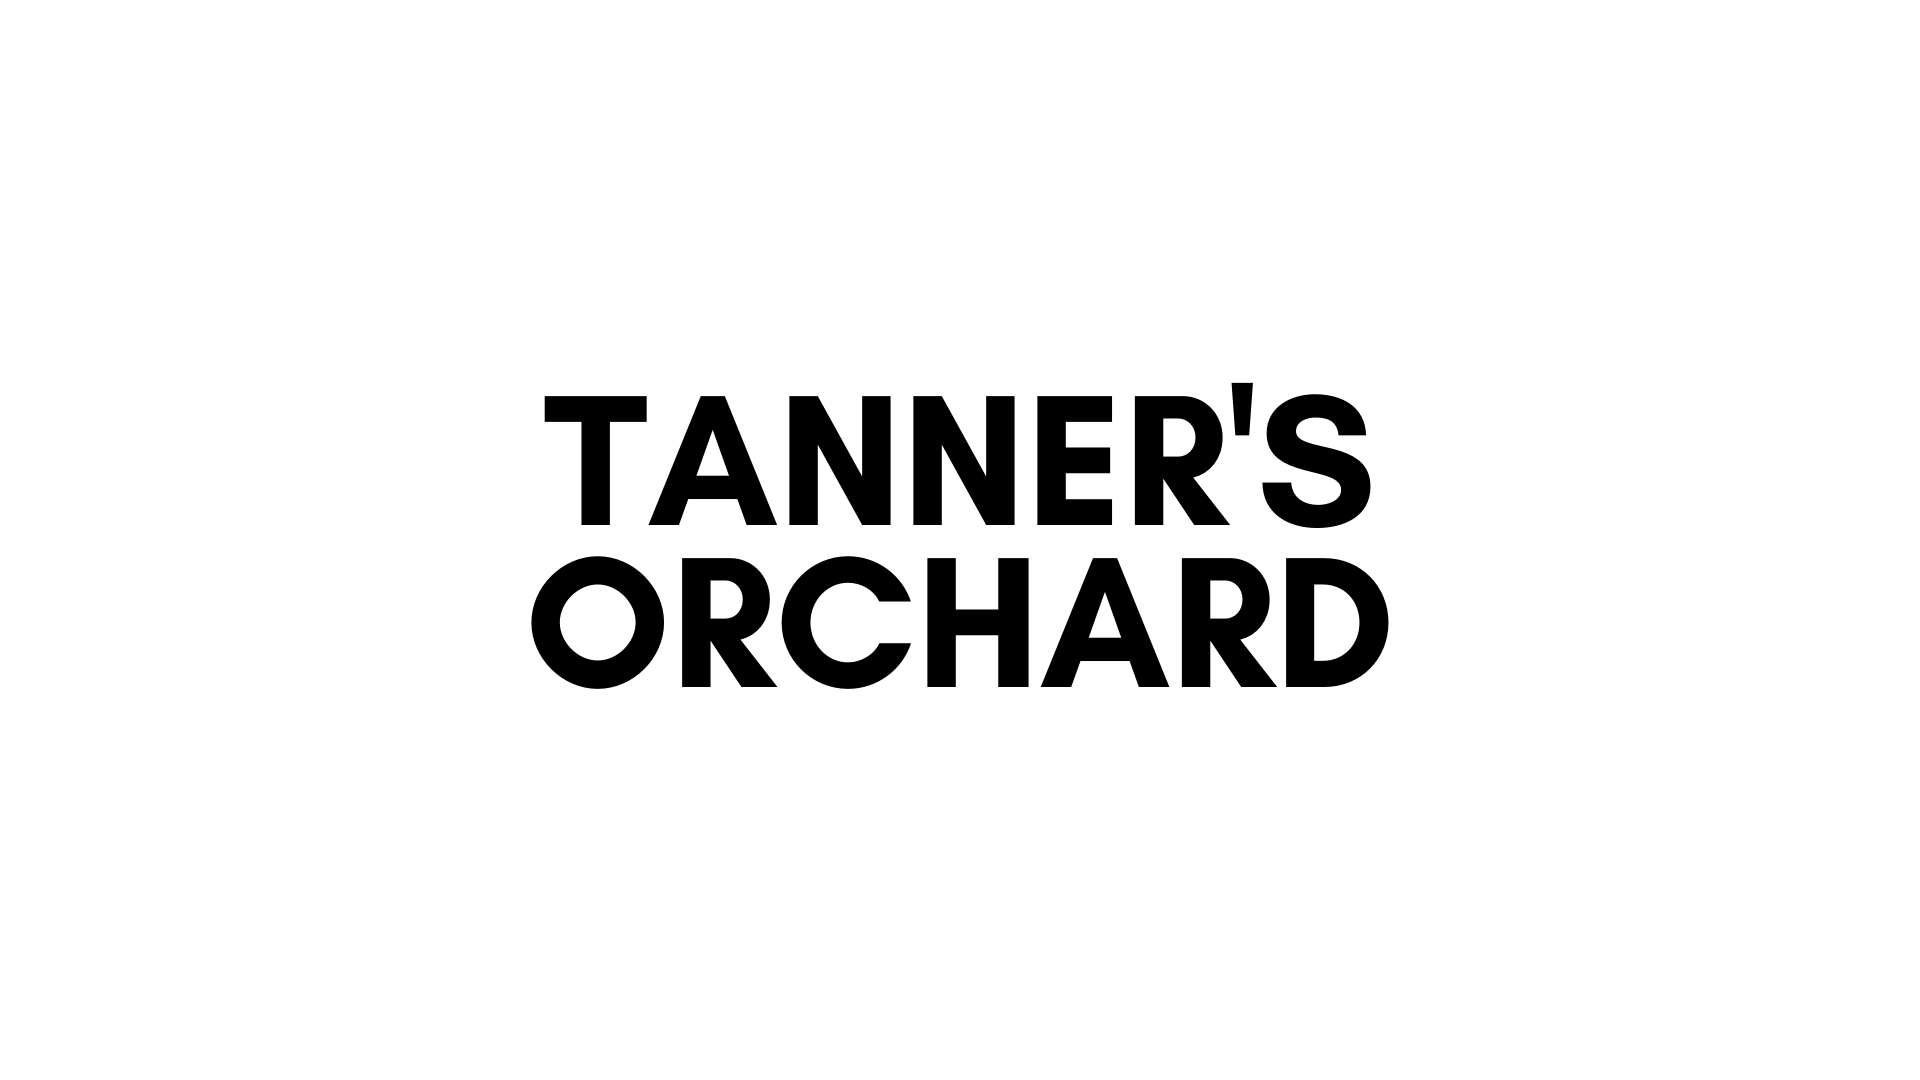 TANNER'S OCHARD